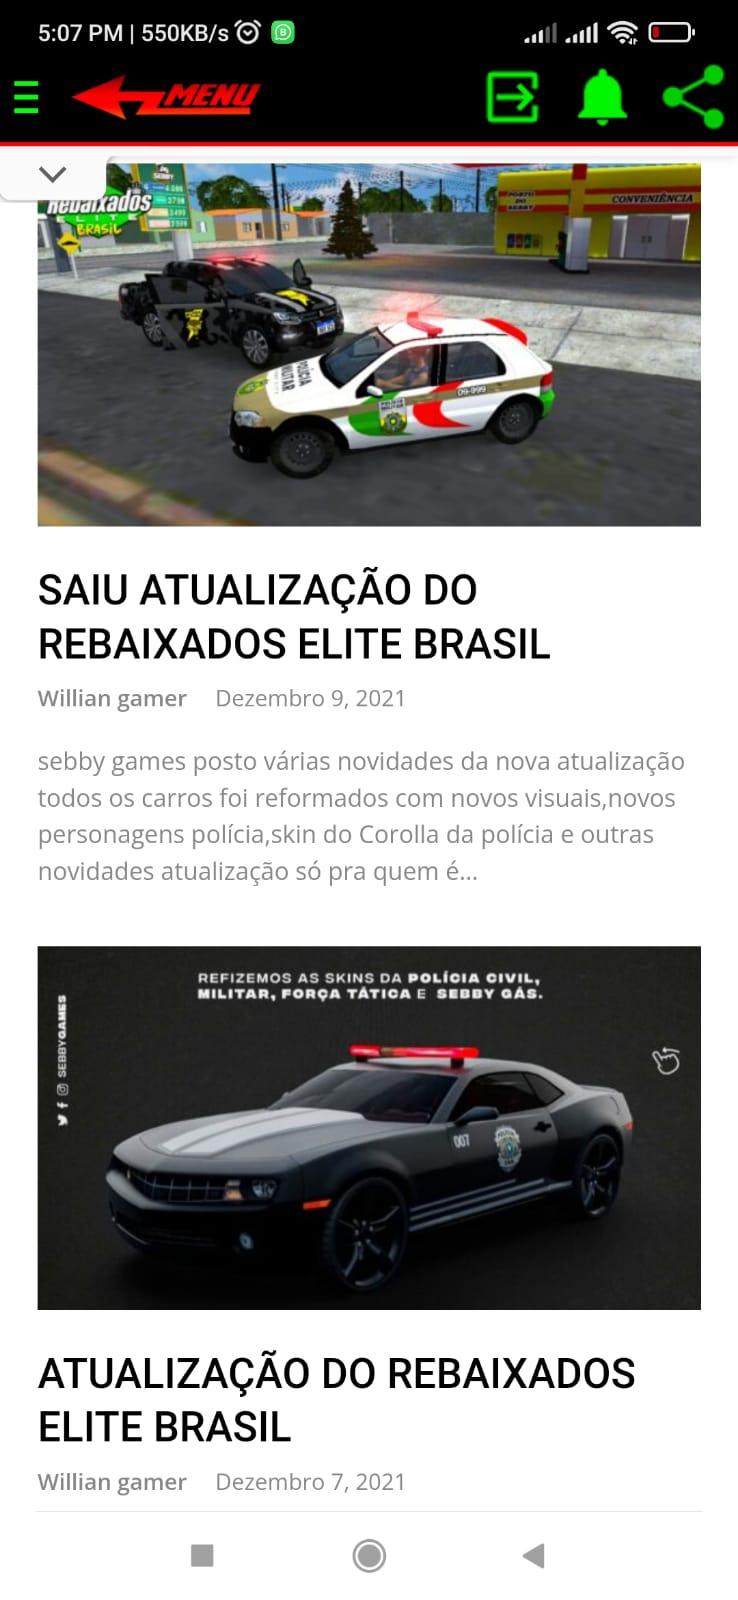 Atualização Rebaixados Elite Brasil - REB APK (Android App) - Free Download